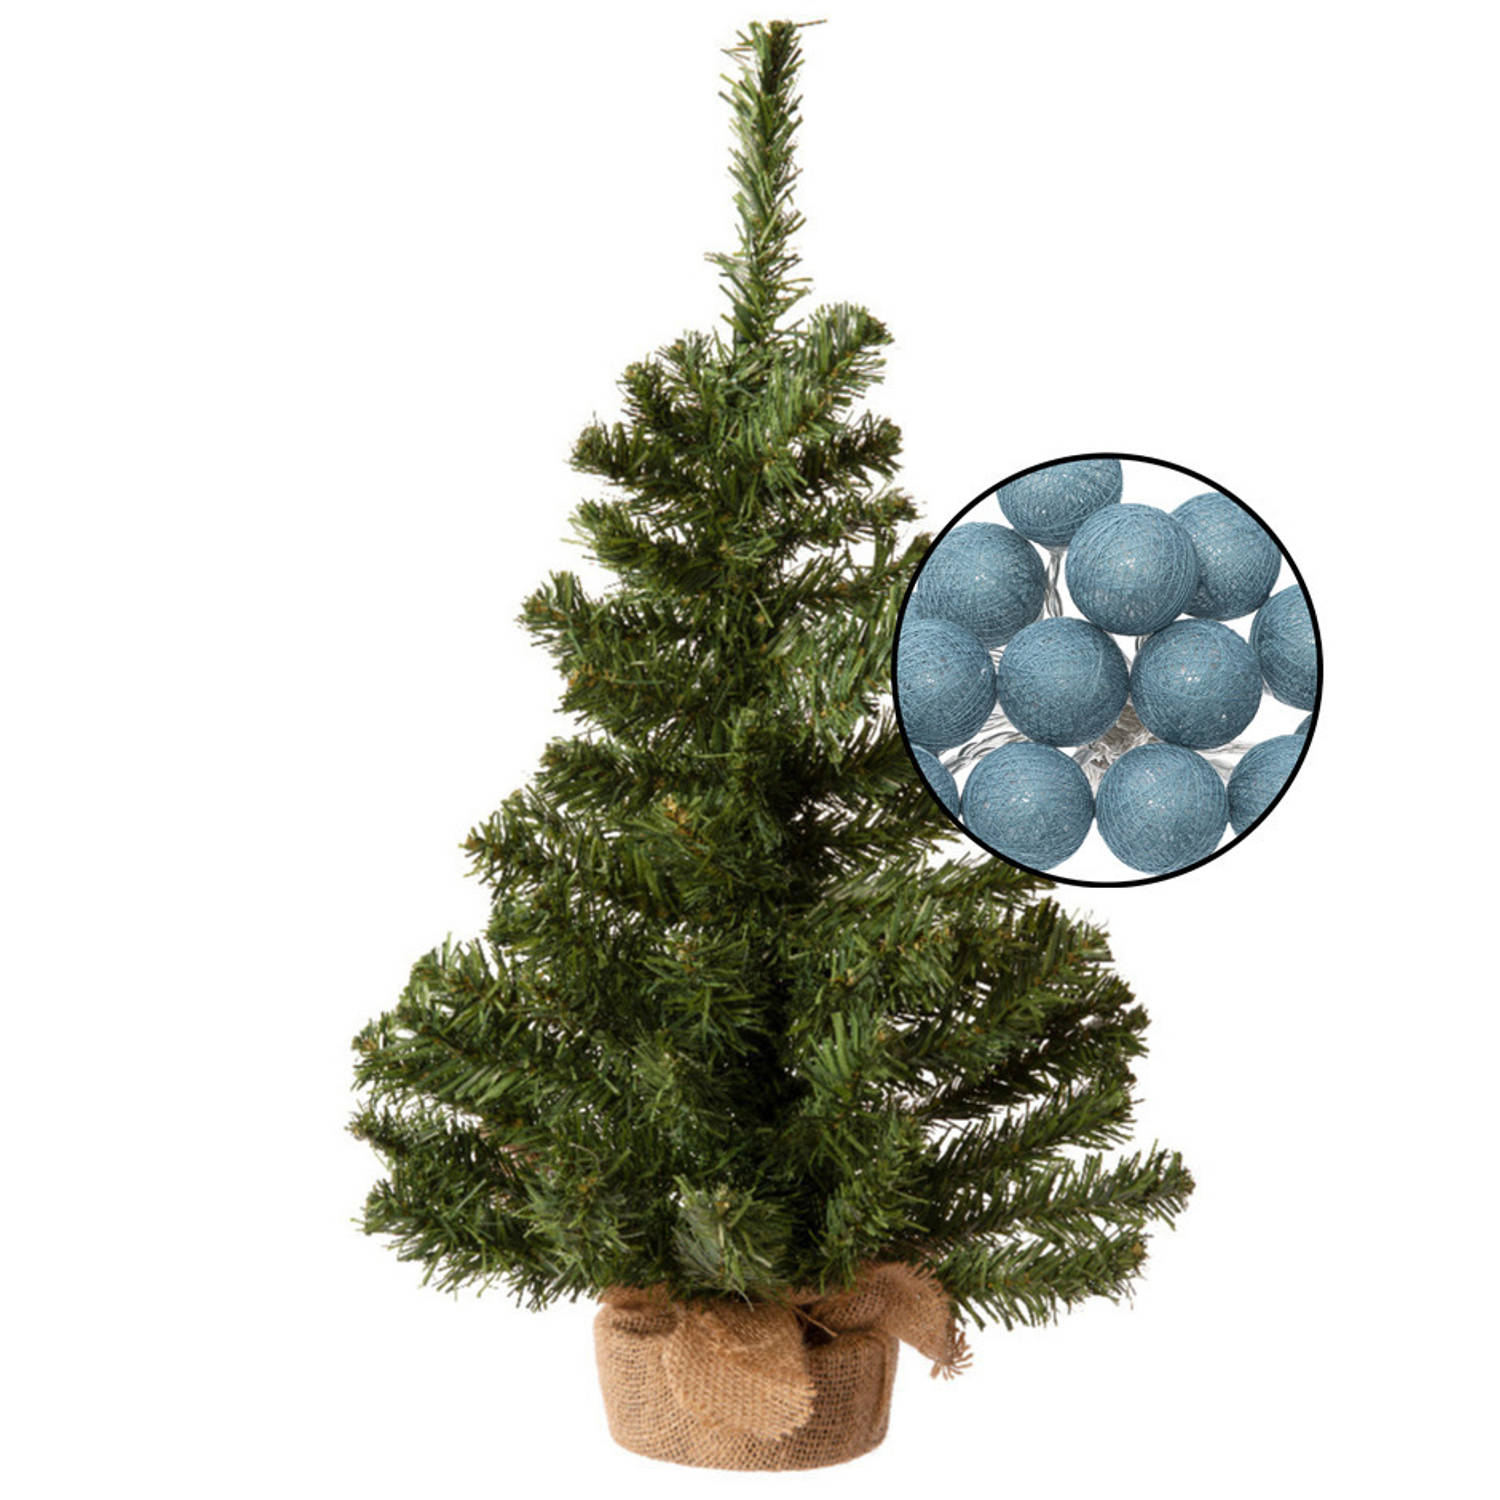 Mini kerstboom groen met verlichting in jute zak H60 cm blauw Kunstkerstboom